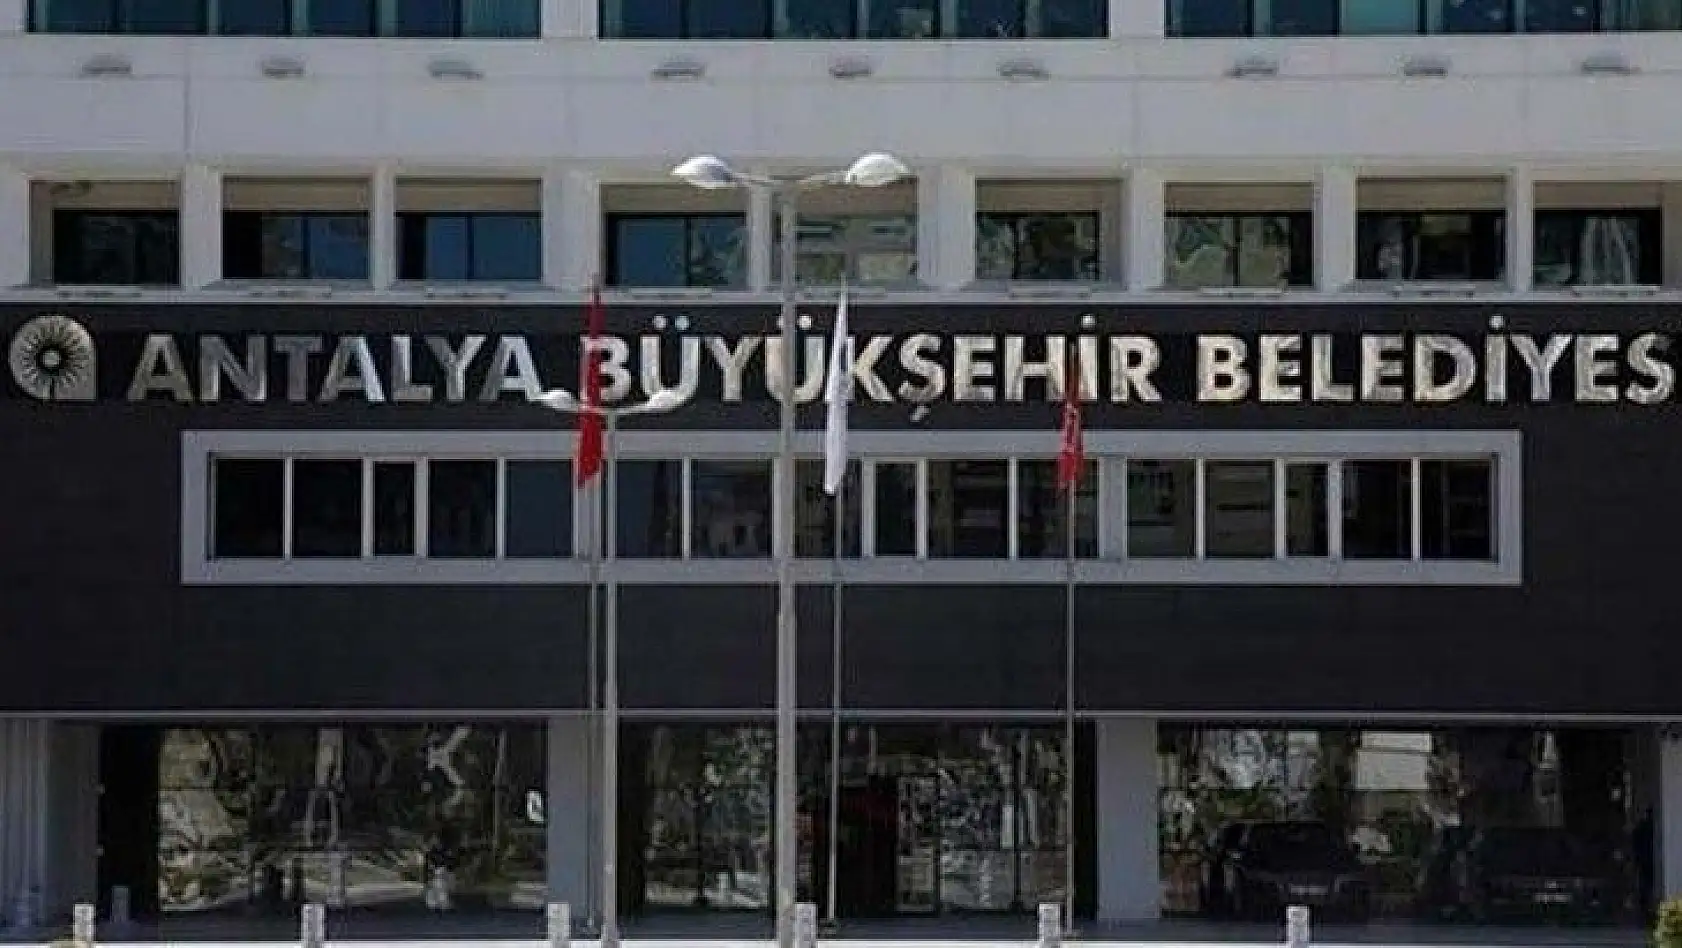 Antalya Büyükşehir Belediye Başkanlığı 125 İtfaiye Eri Alacak